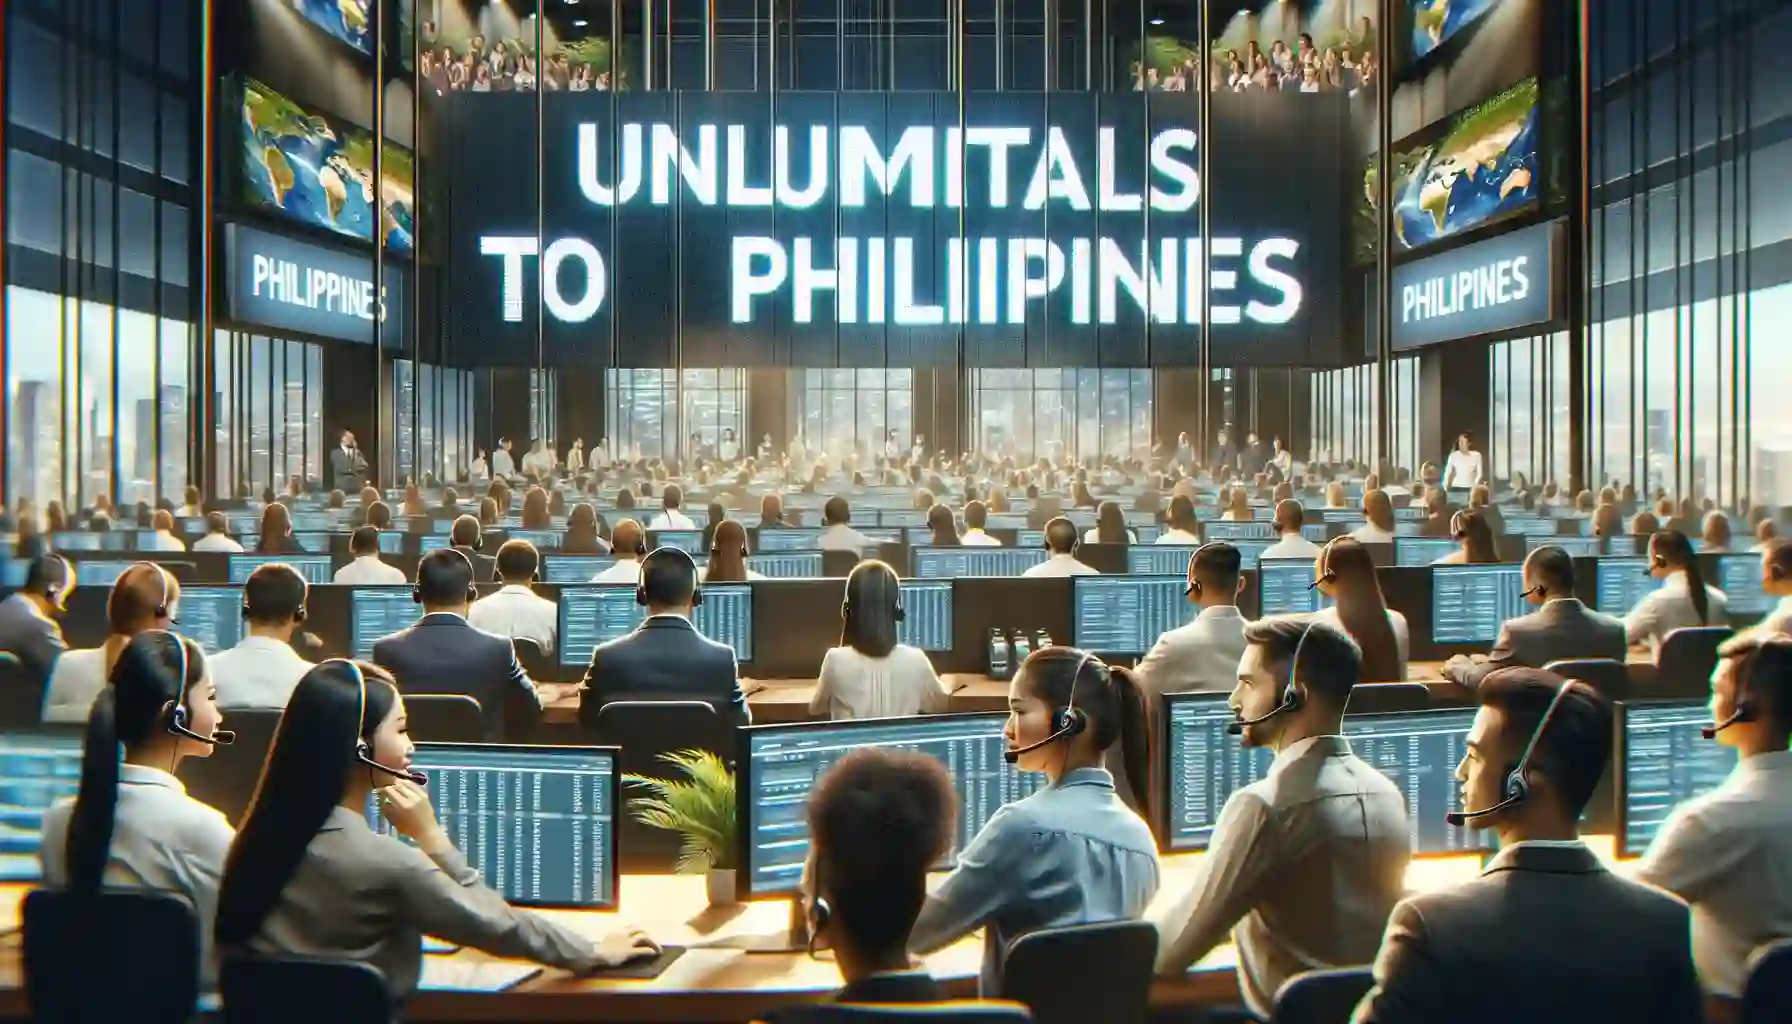 مكالمات غير محدودة إلى الفلبين